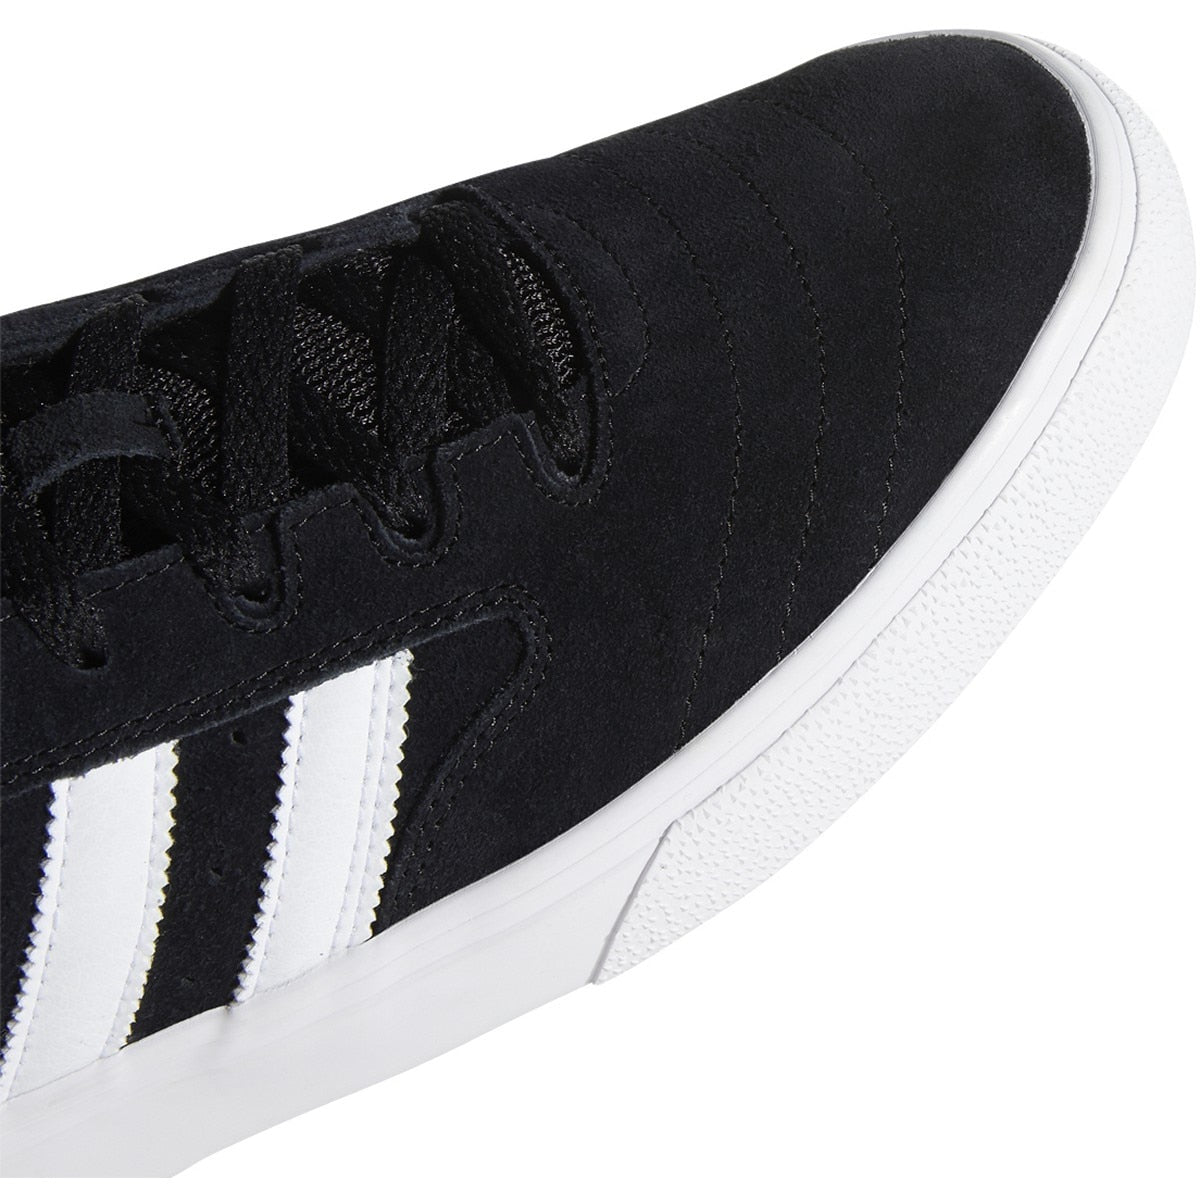 Adidas Busenitz Vulc II Skate Shoe - Black/White/Gum